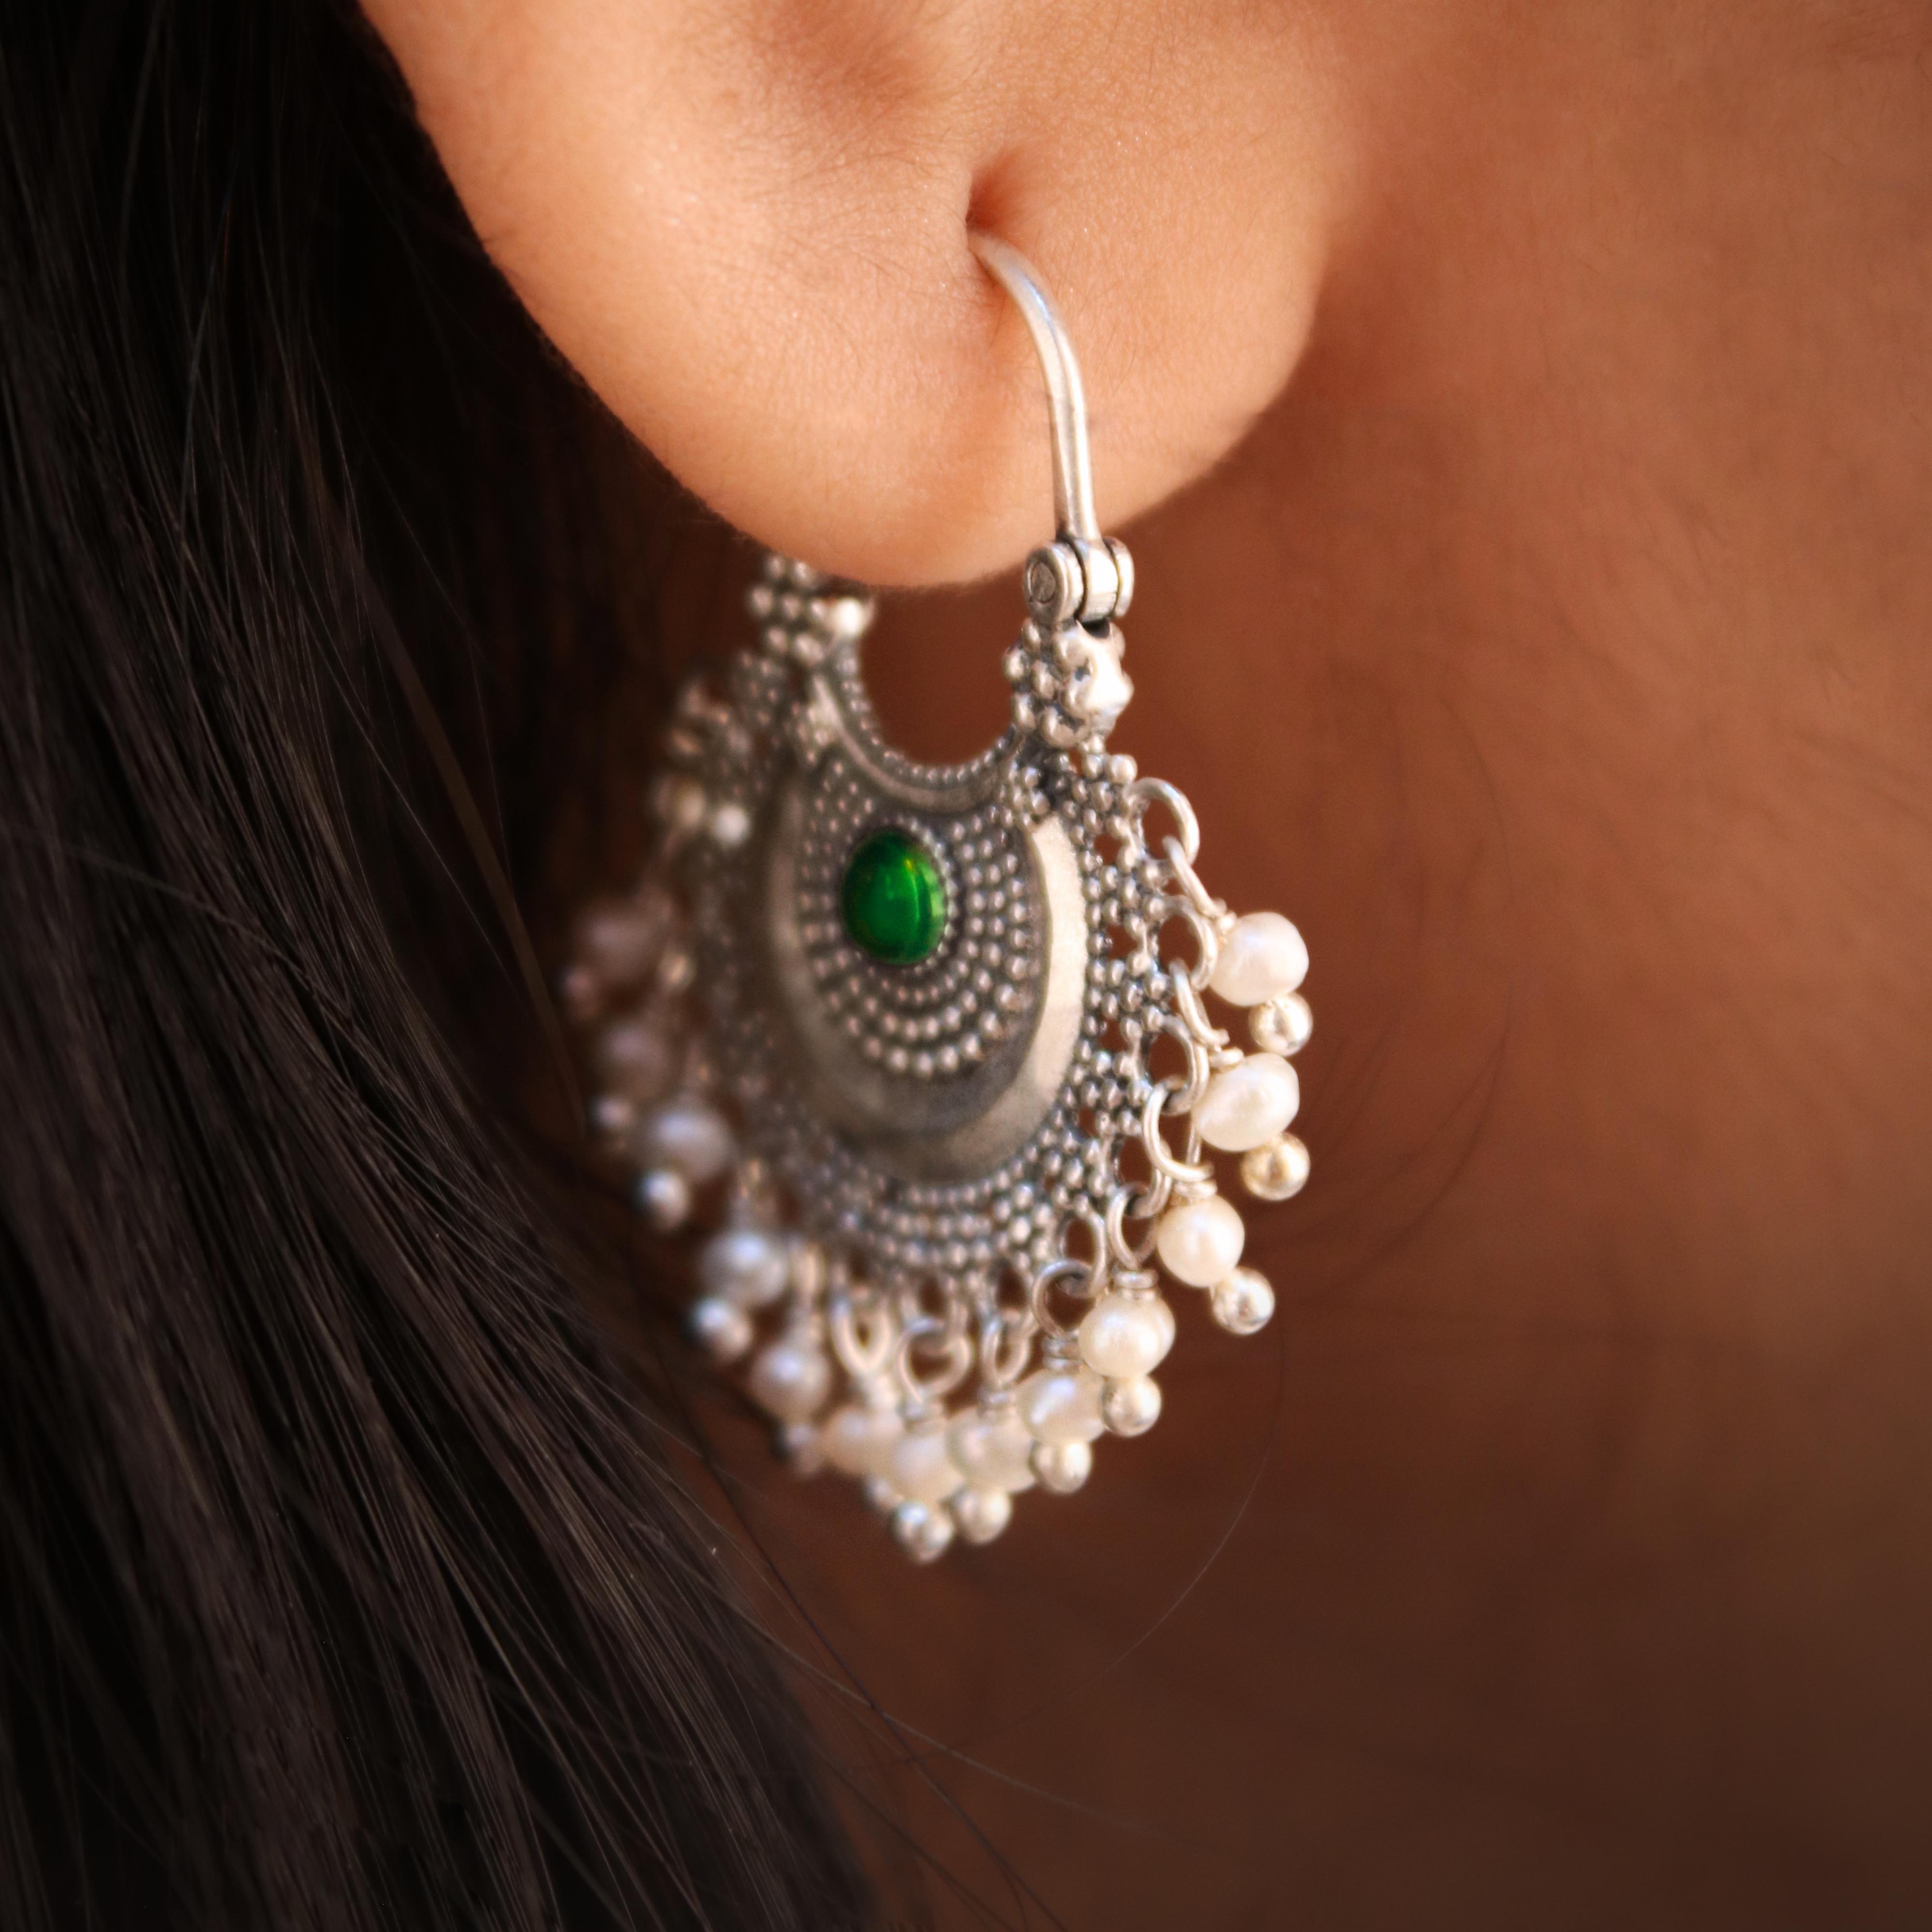 Buy Sterling Silver Hoop Earrings, Bali Hoops Earrings,bali Style Hoop  Earring ,tiny Hoop Earring,balinese Earrings,bali Earrings Silver, 1.28m  Online in India - Etsy